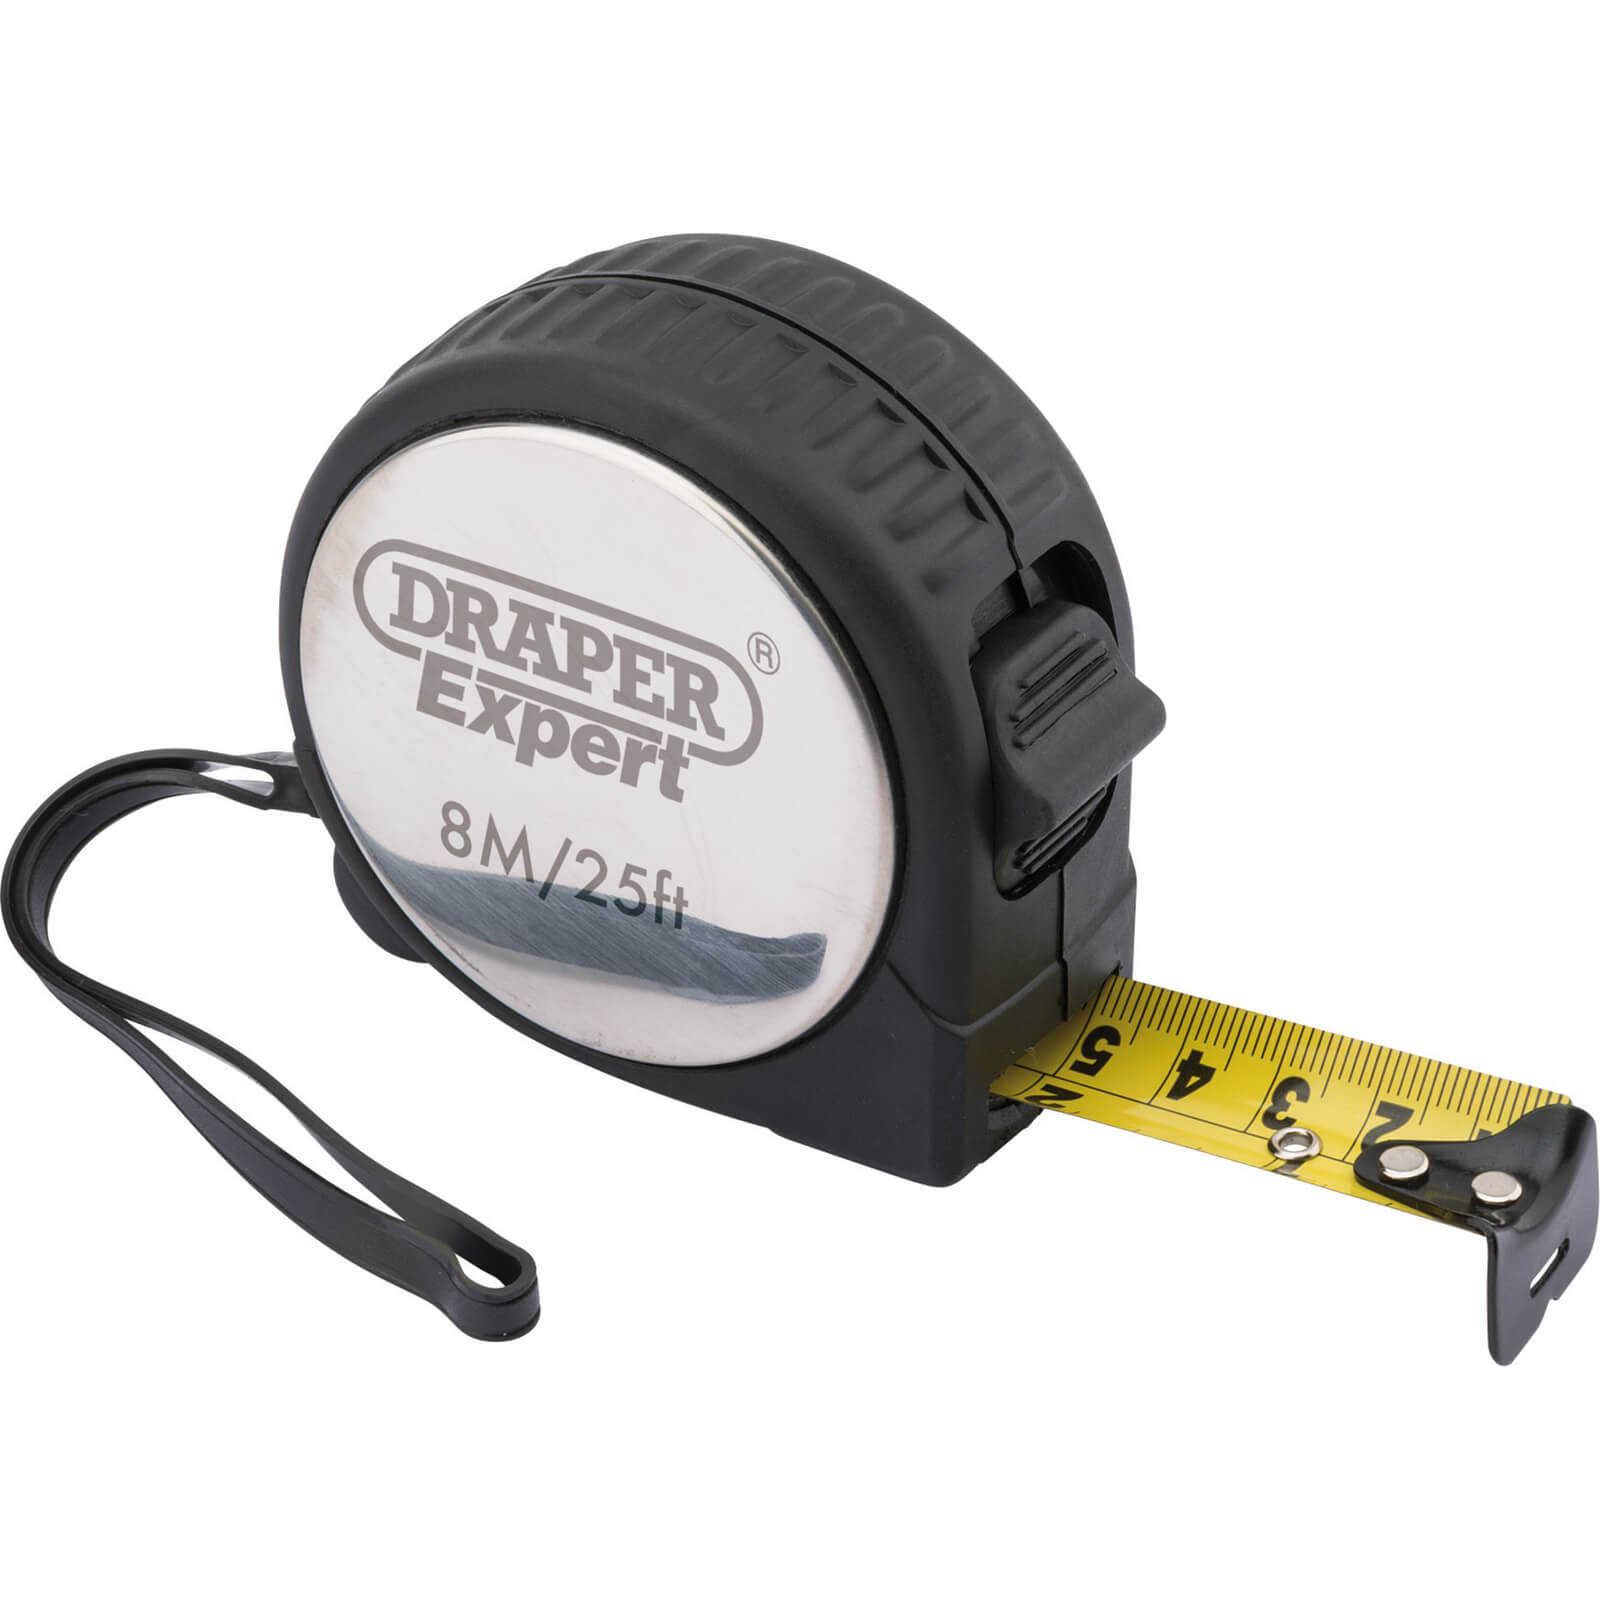 Image of Draper Expert Measuring Tape, 8m/26ft x 25mm